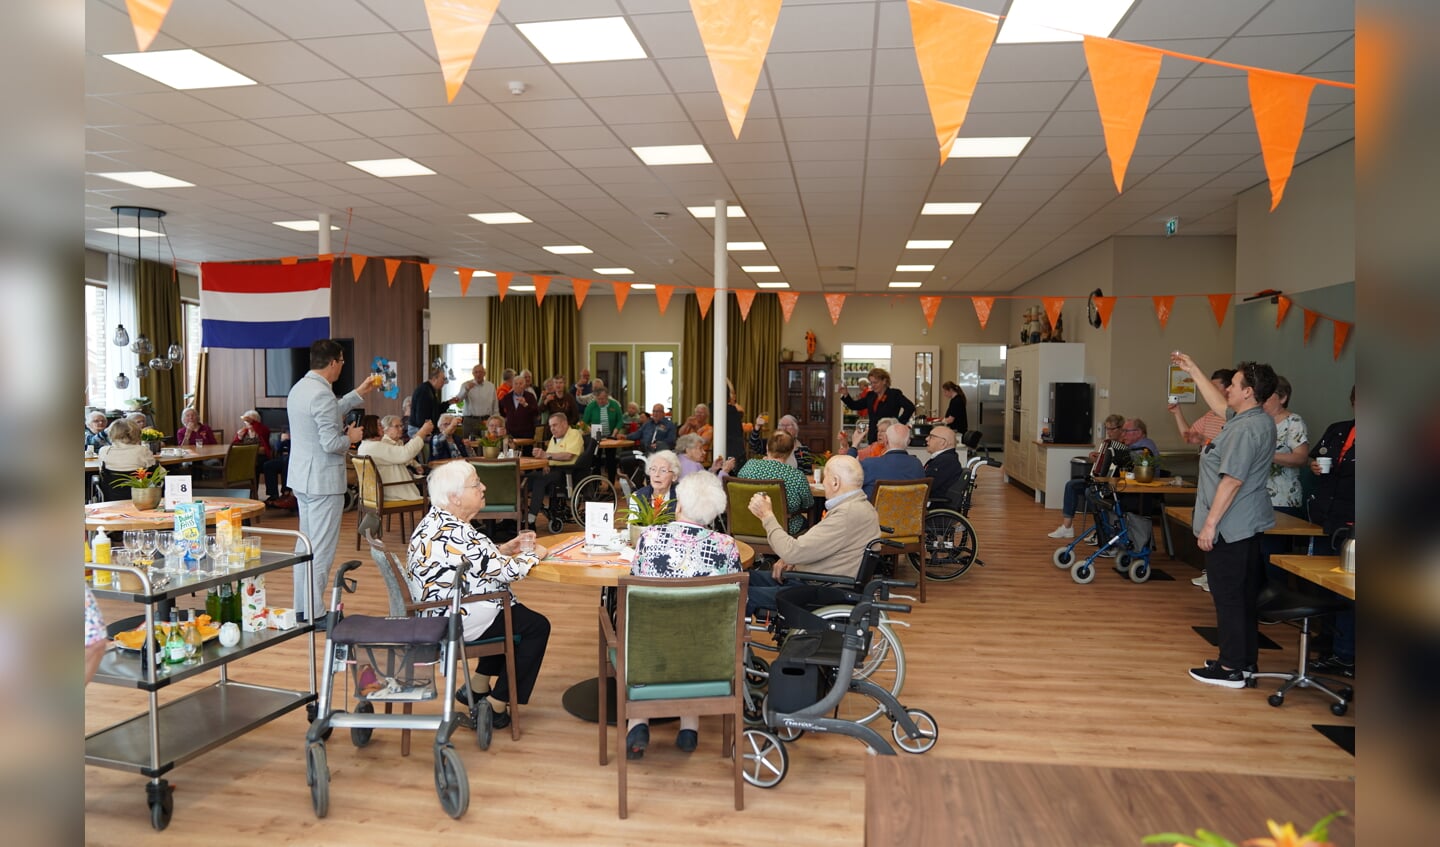 Traditioneel werd Koningsdag in Ruurlo ‘s morgens in de ontmoetingsruimte op het Bundelingpark. geopend met het uitbrengen van een toast door burgemeester Joost van Oostrum Foto: Wilma Arink.